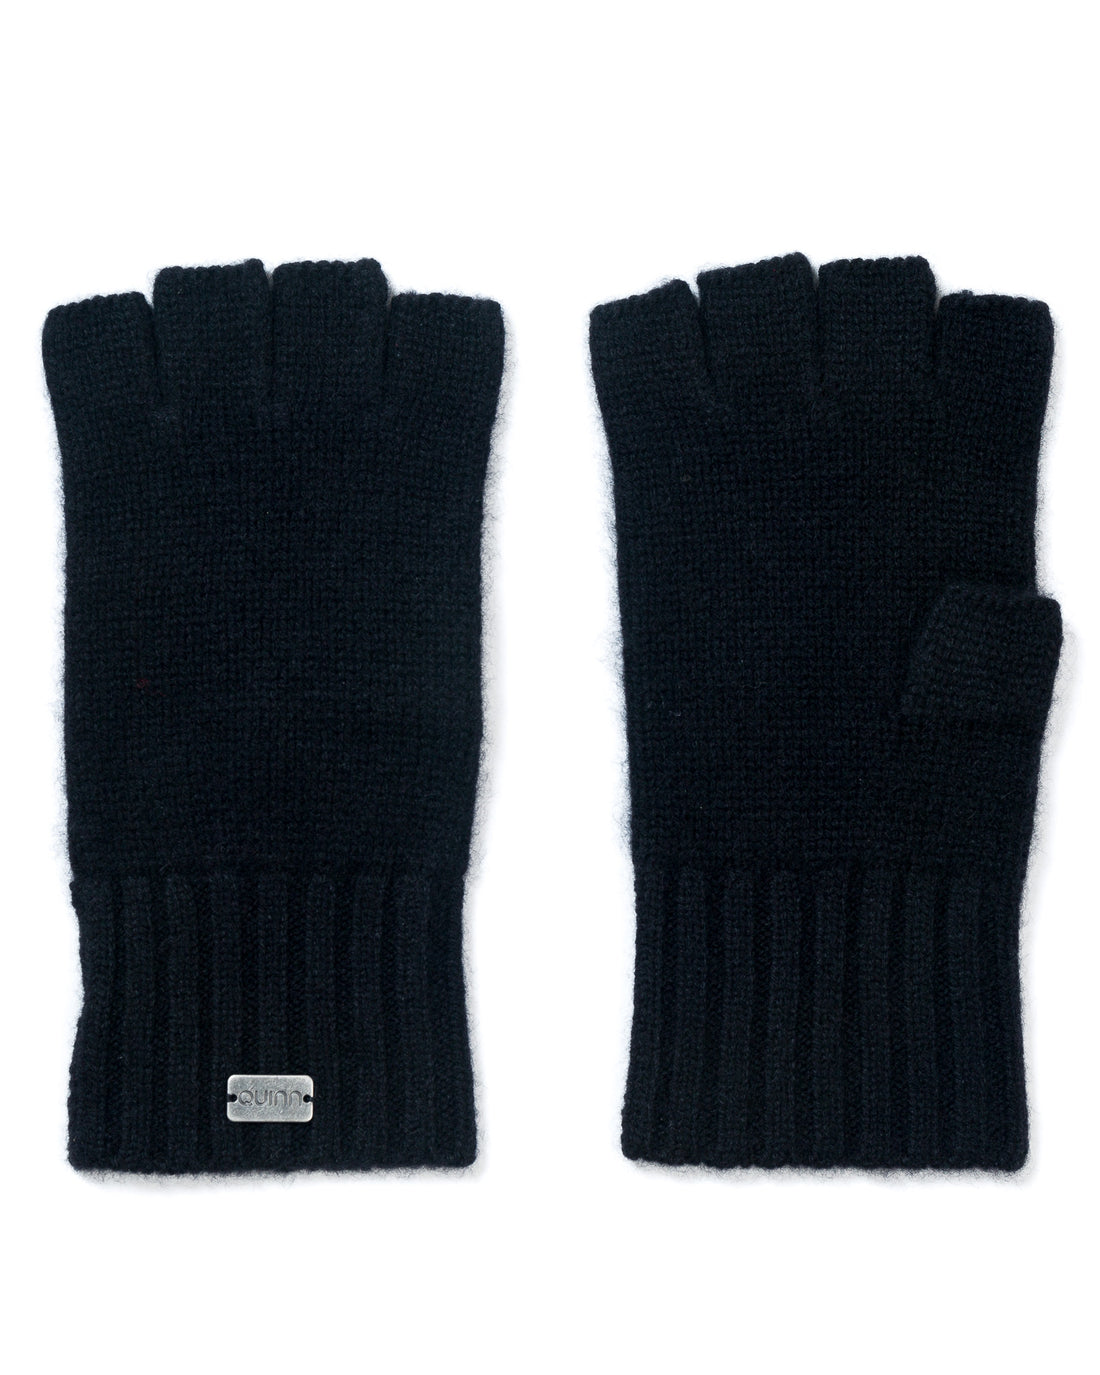 accessories - irwin fingerless glove